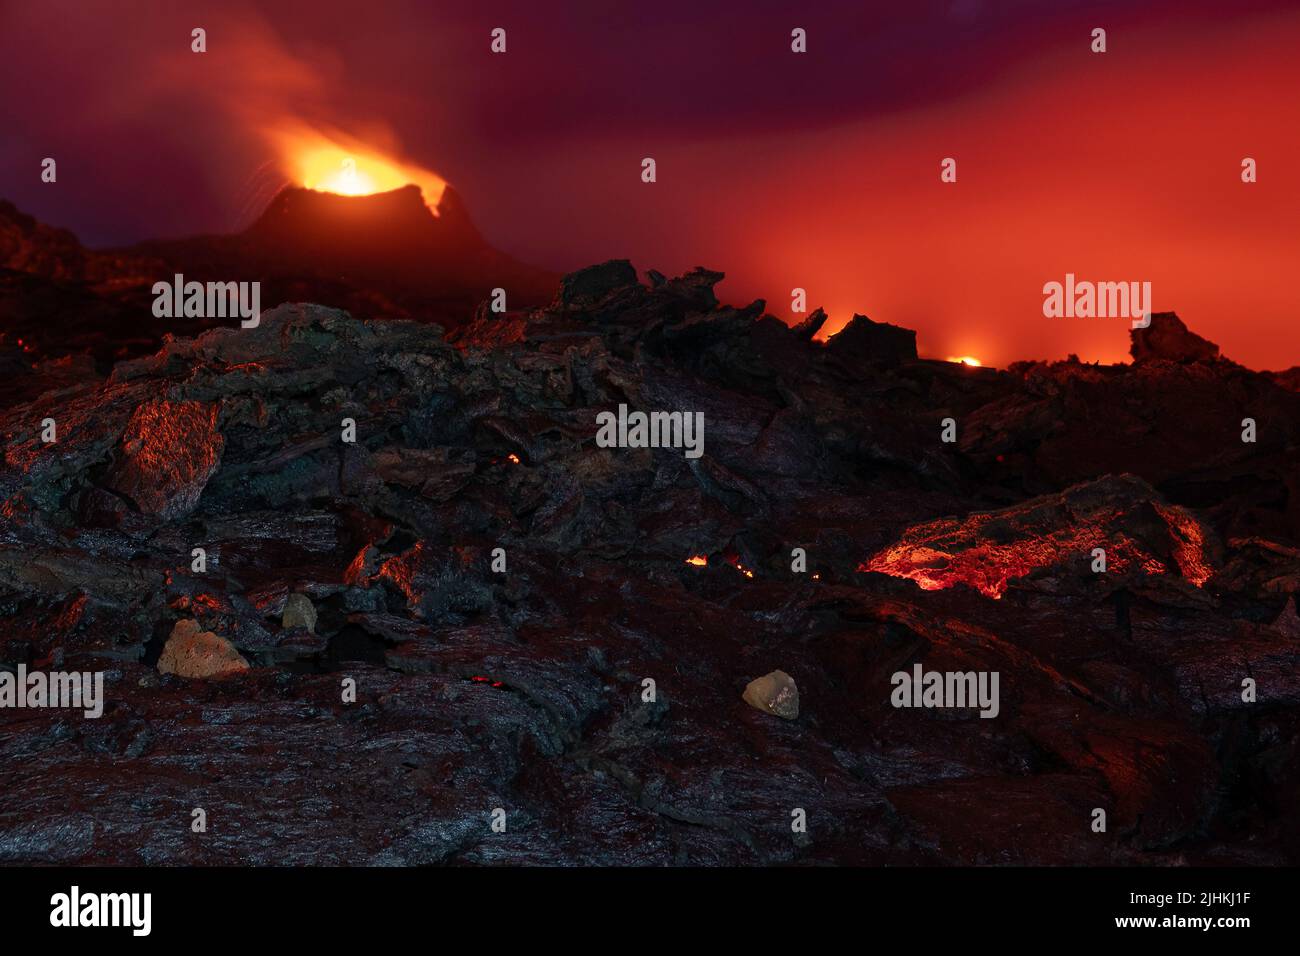 Fotografía sombría y aterradora de la erupción en Islandia en 2021, los colores y los escenarios recuerdan cómo podría ser el infierno Foto de stock